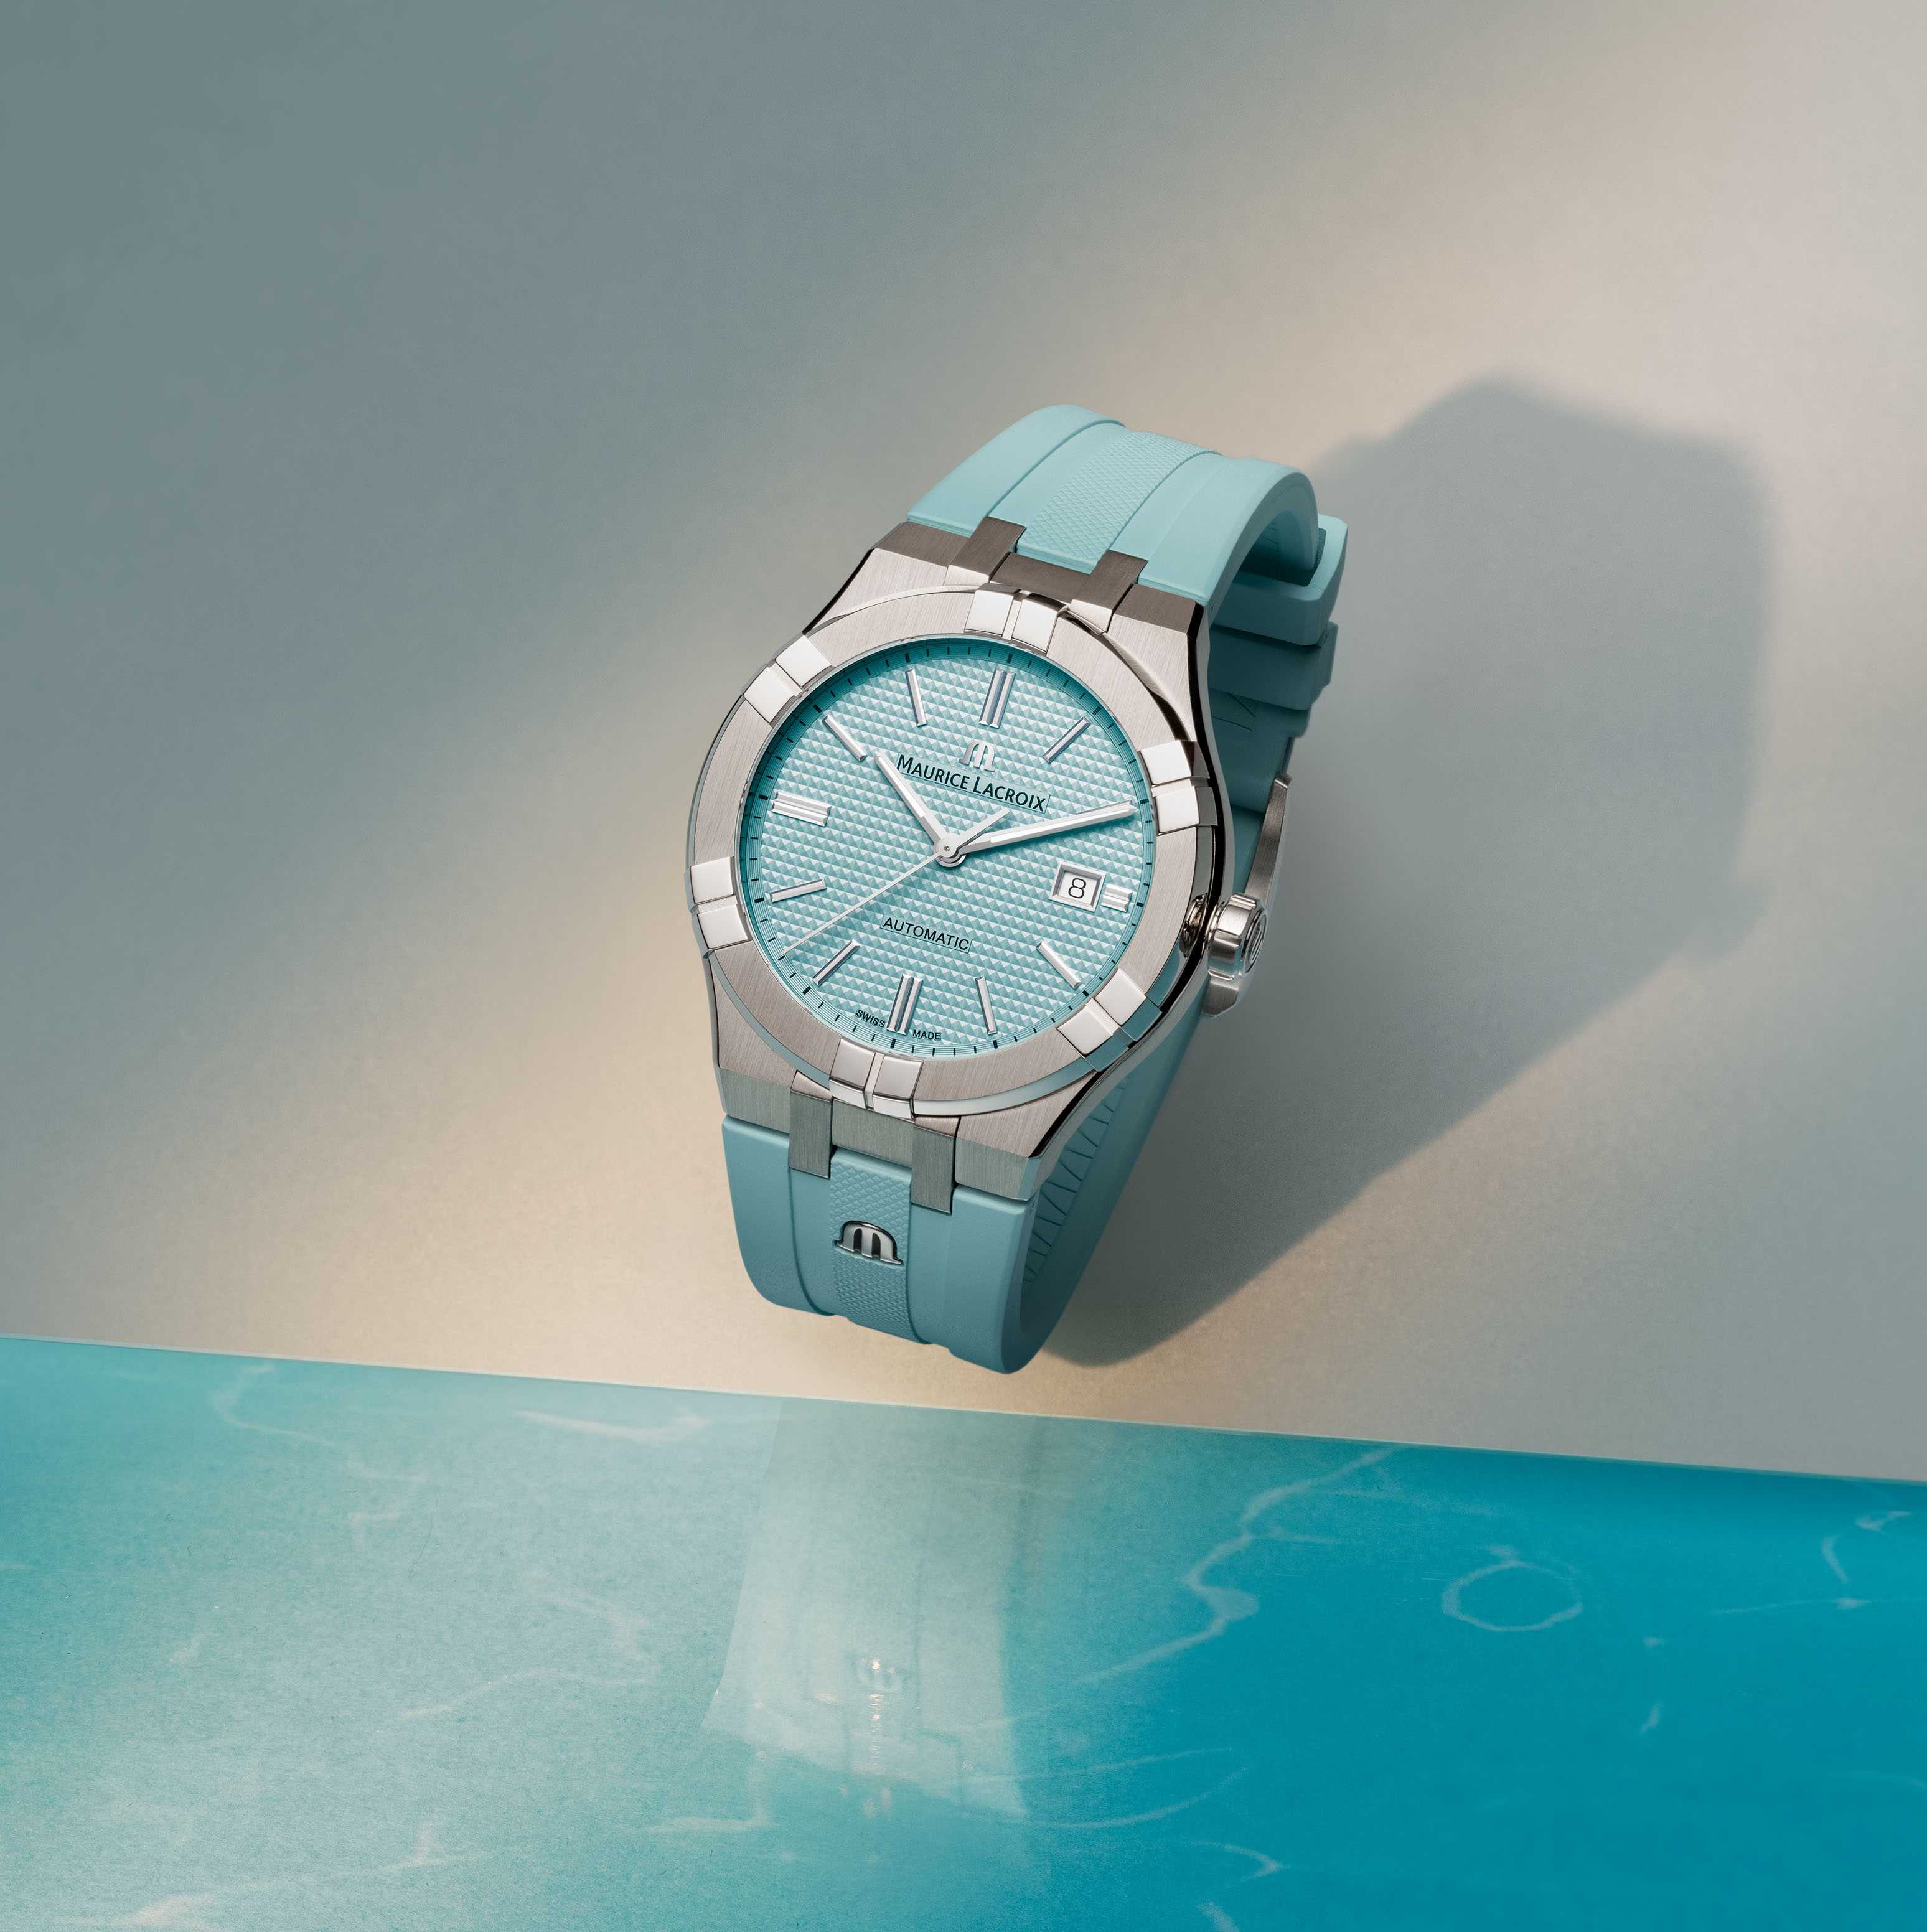 Maurice Lacroix Offizieller Class Fachhändler Watches™ - - AUT Uhren UK First